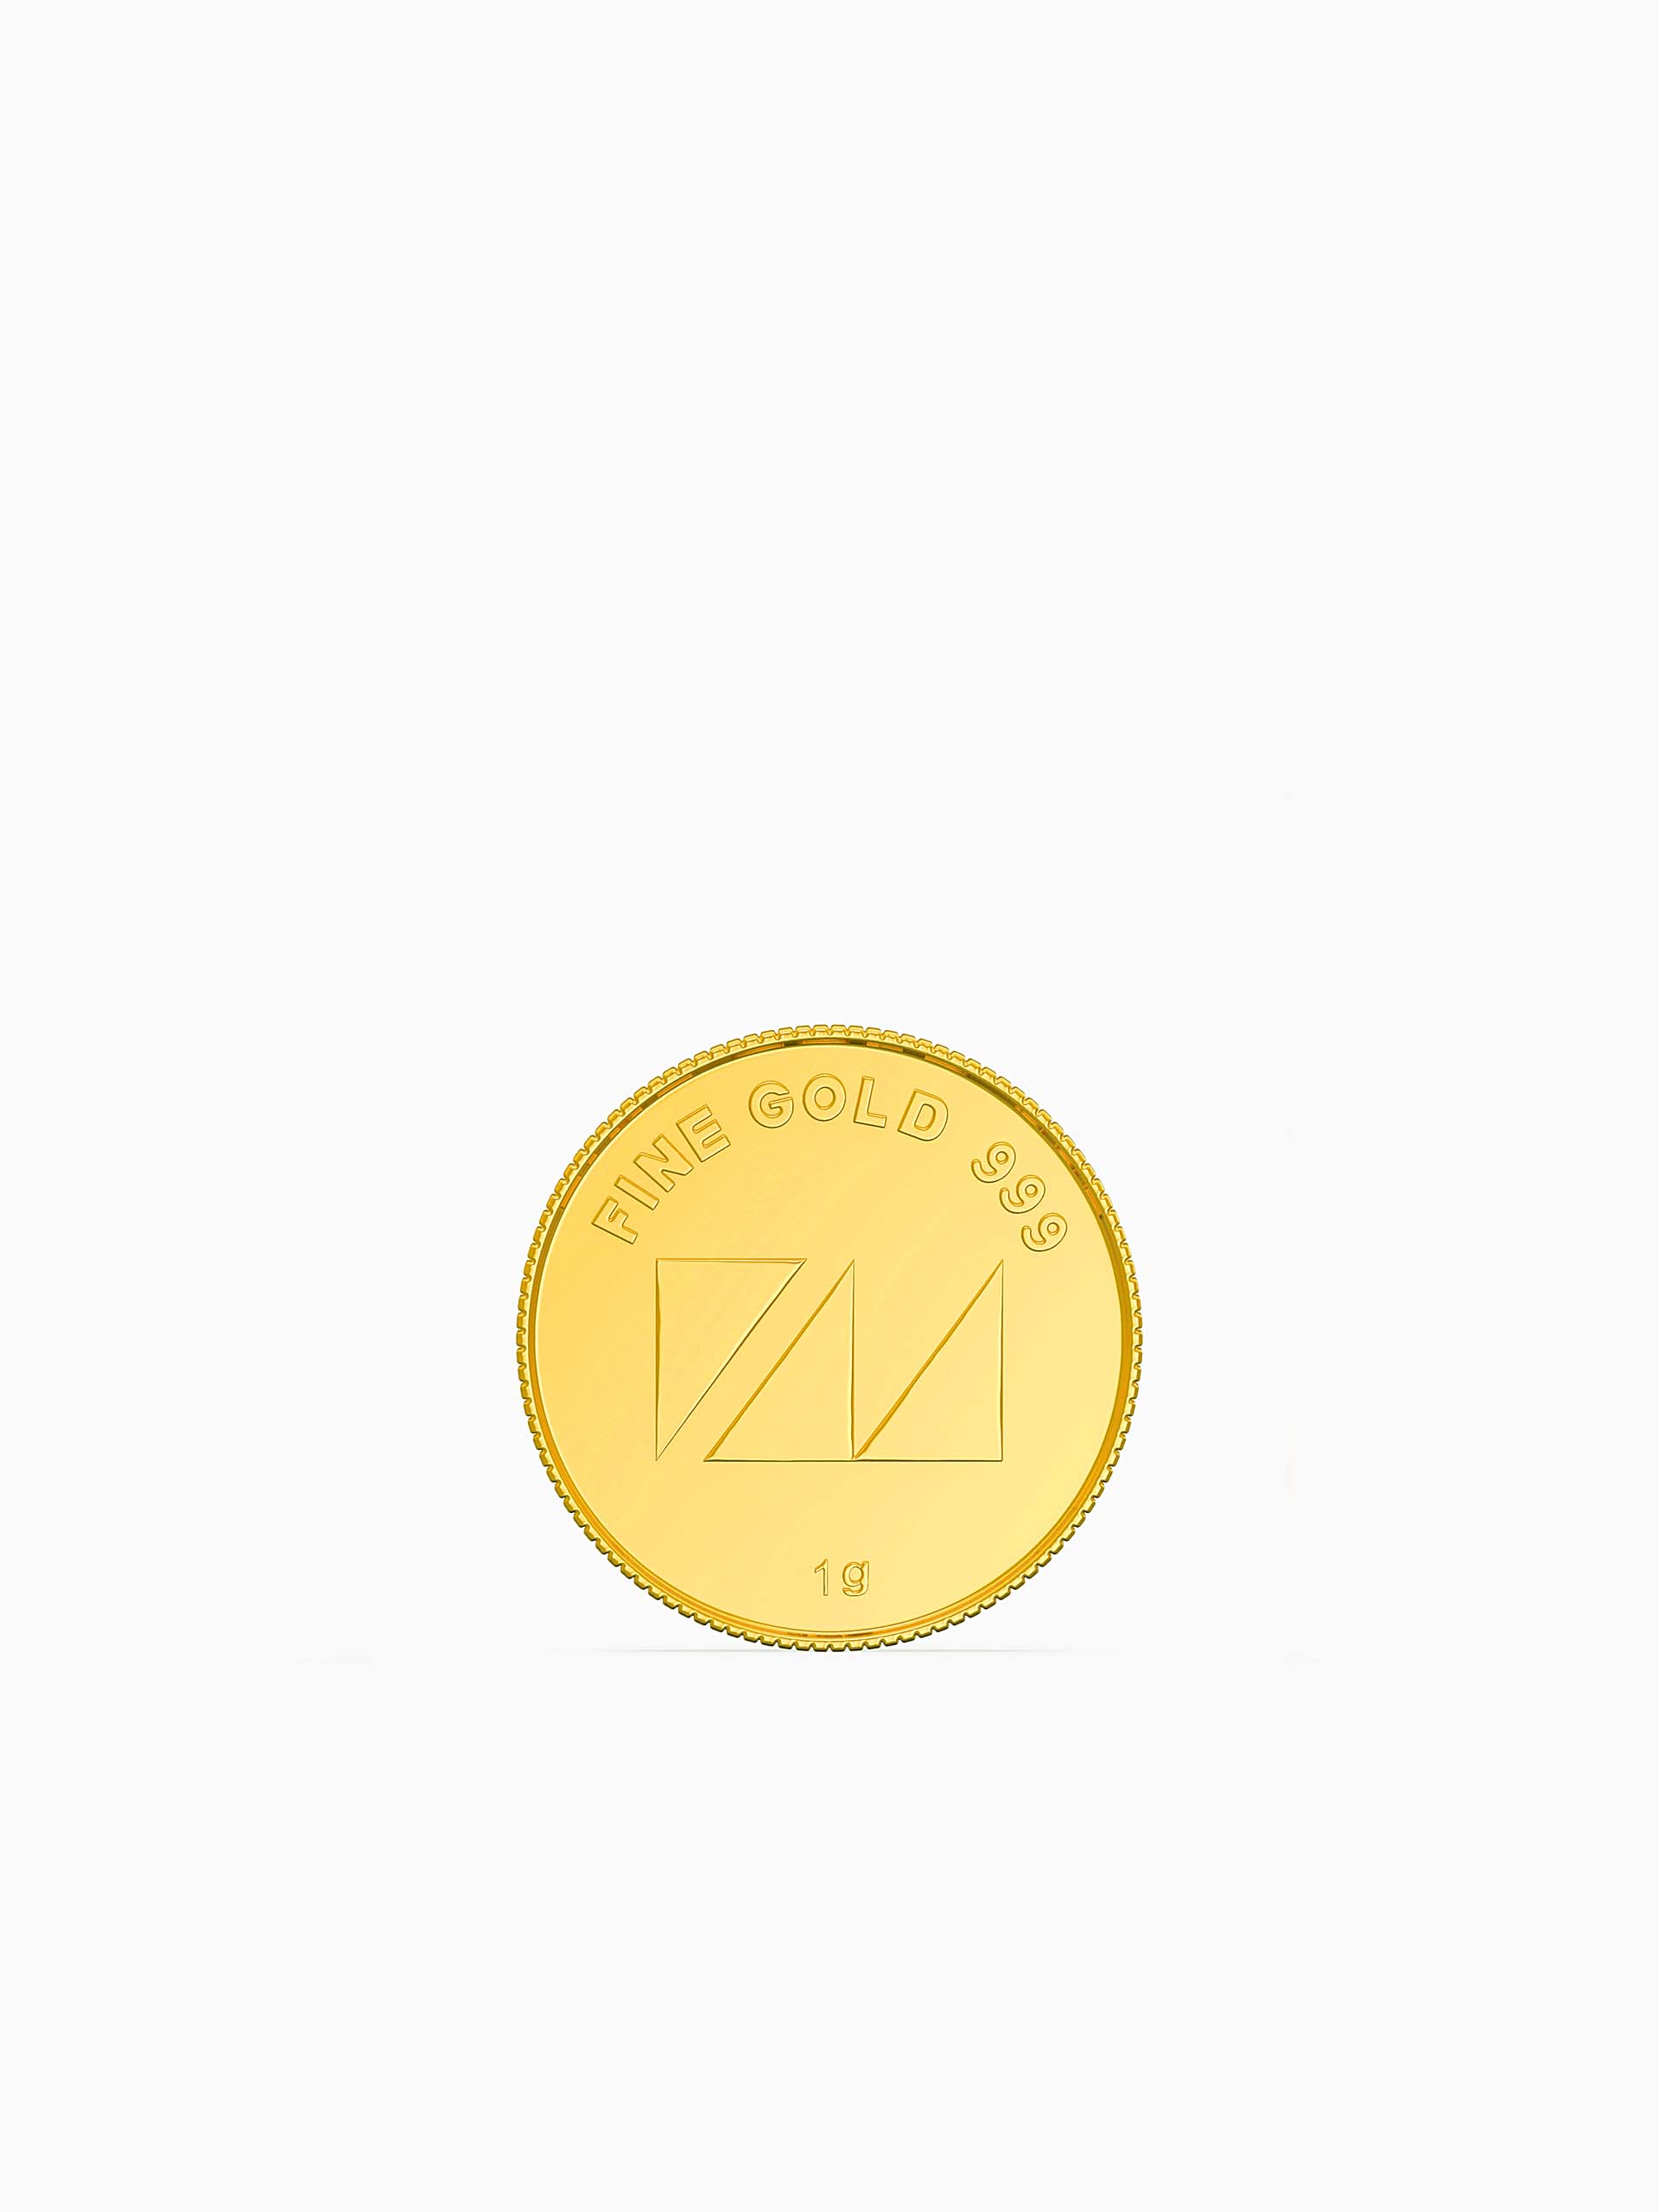 1 Gram 999 Purity Goddess Laxmi Gold Coin - Zest Mélange 